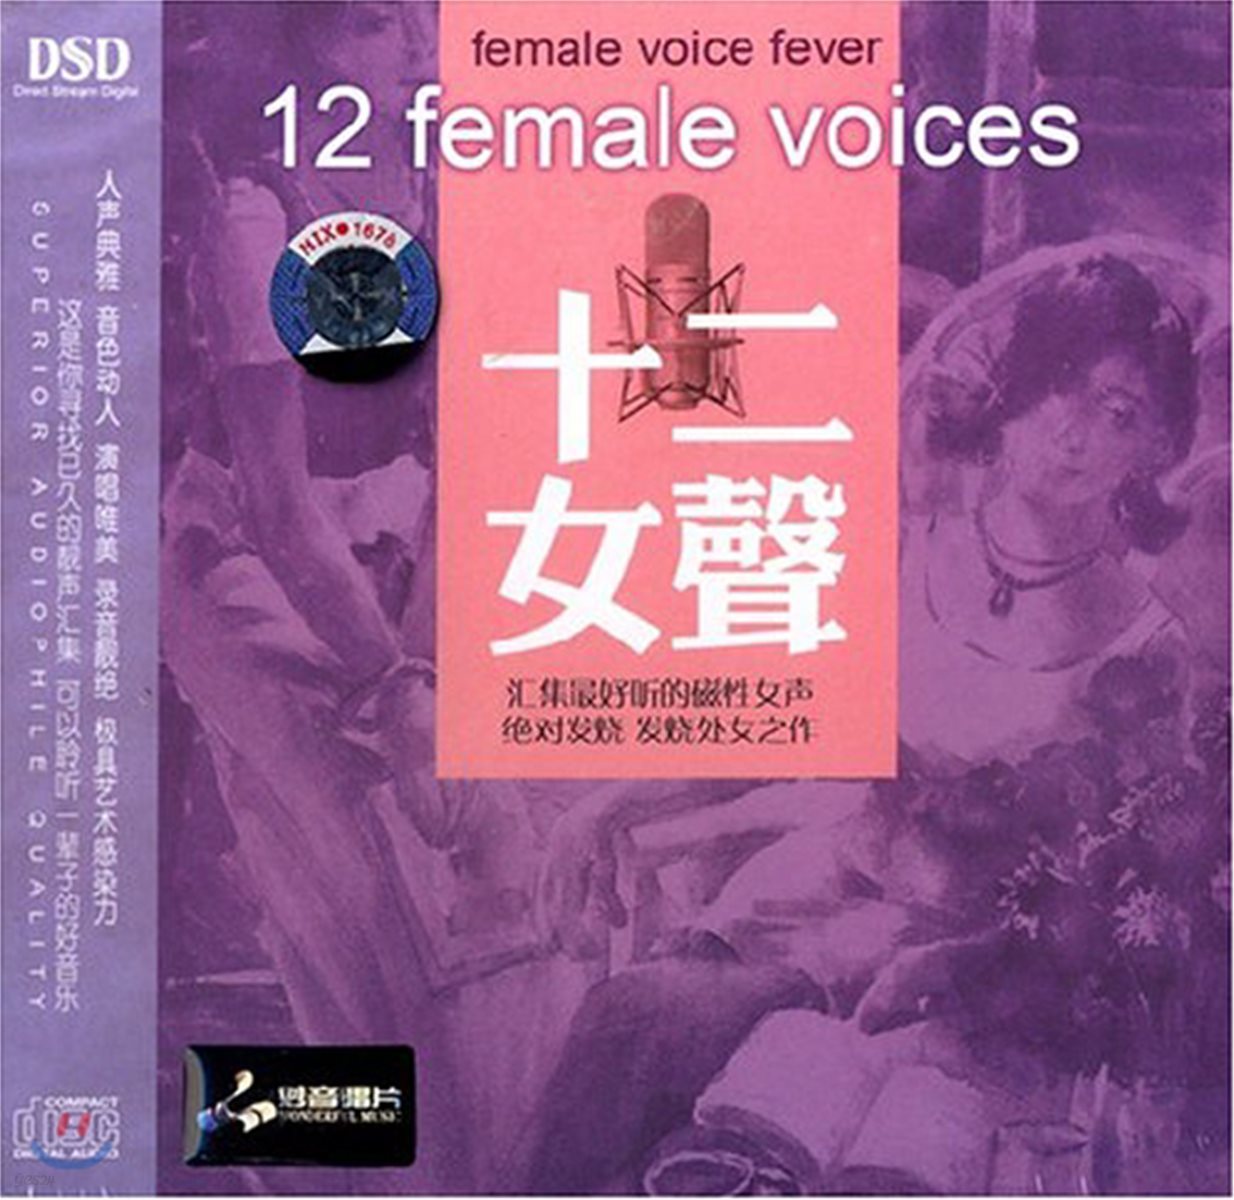 중국 여성 보컬 모음 1집 (12 Female Voices Vol.1)